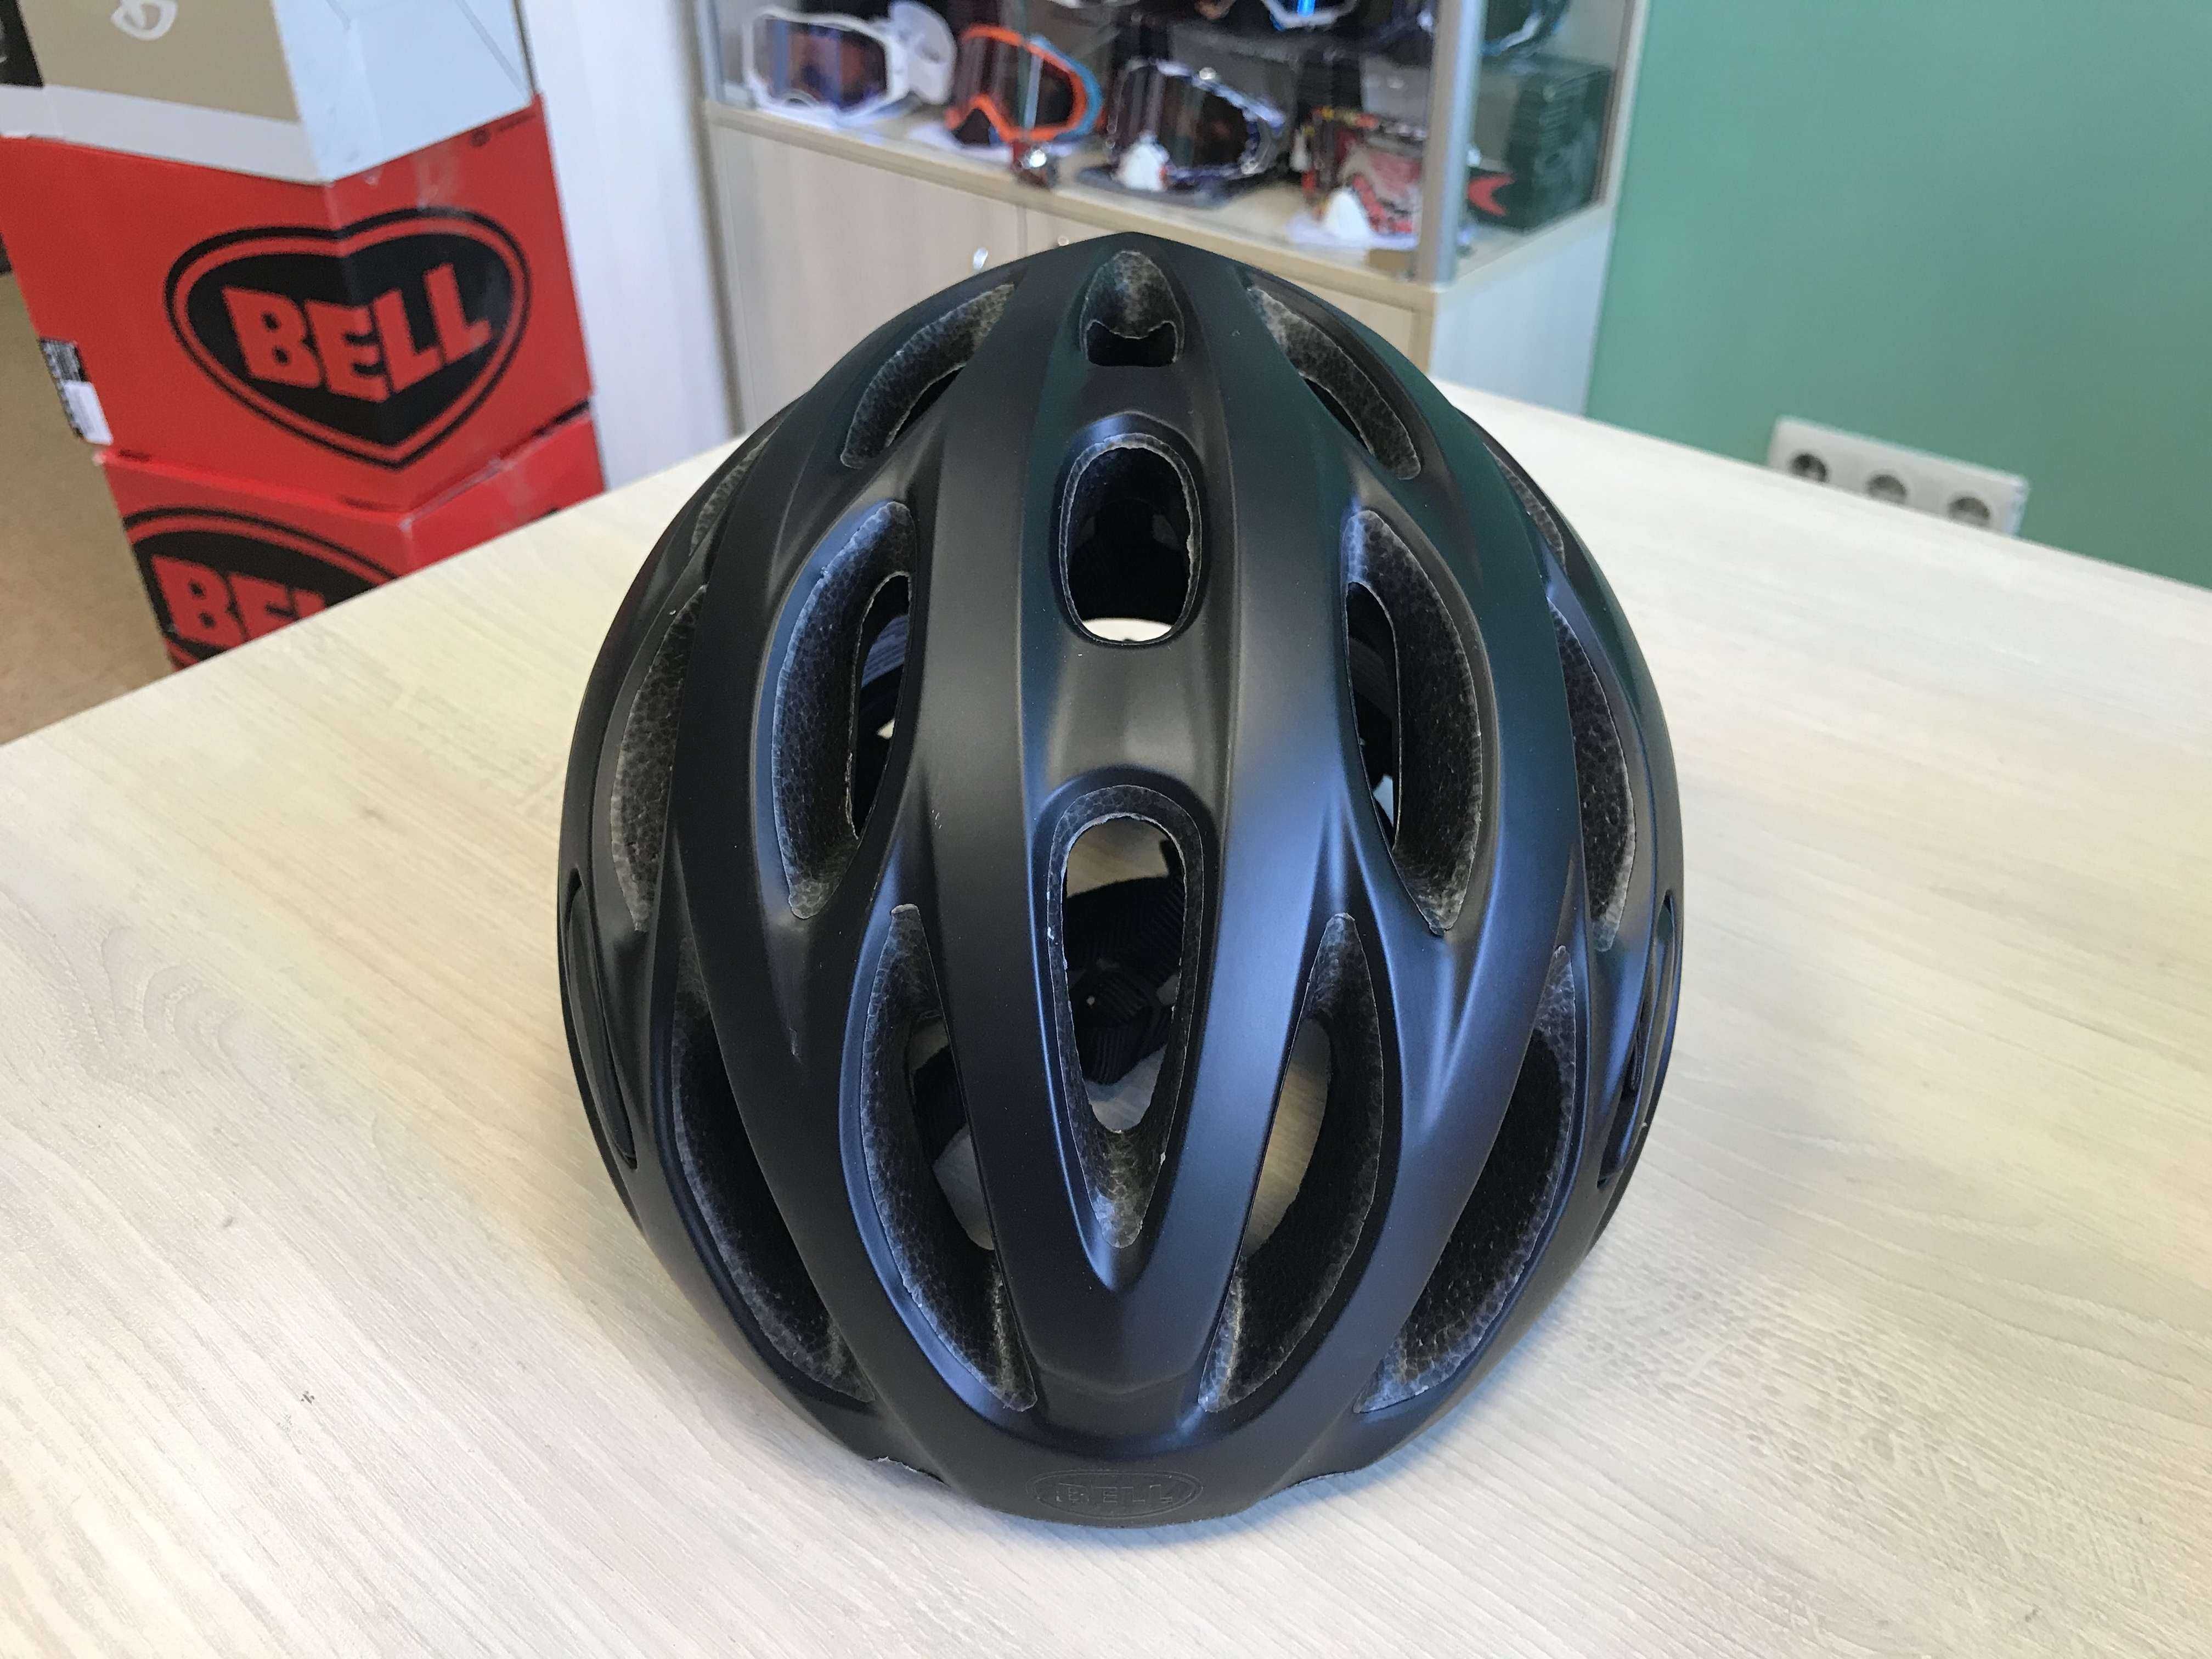 Велосипедный шлем велошлем Bell Draft Универсальный 54-61 см